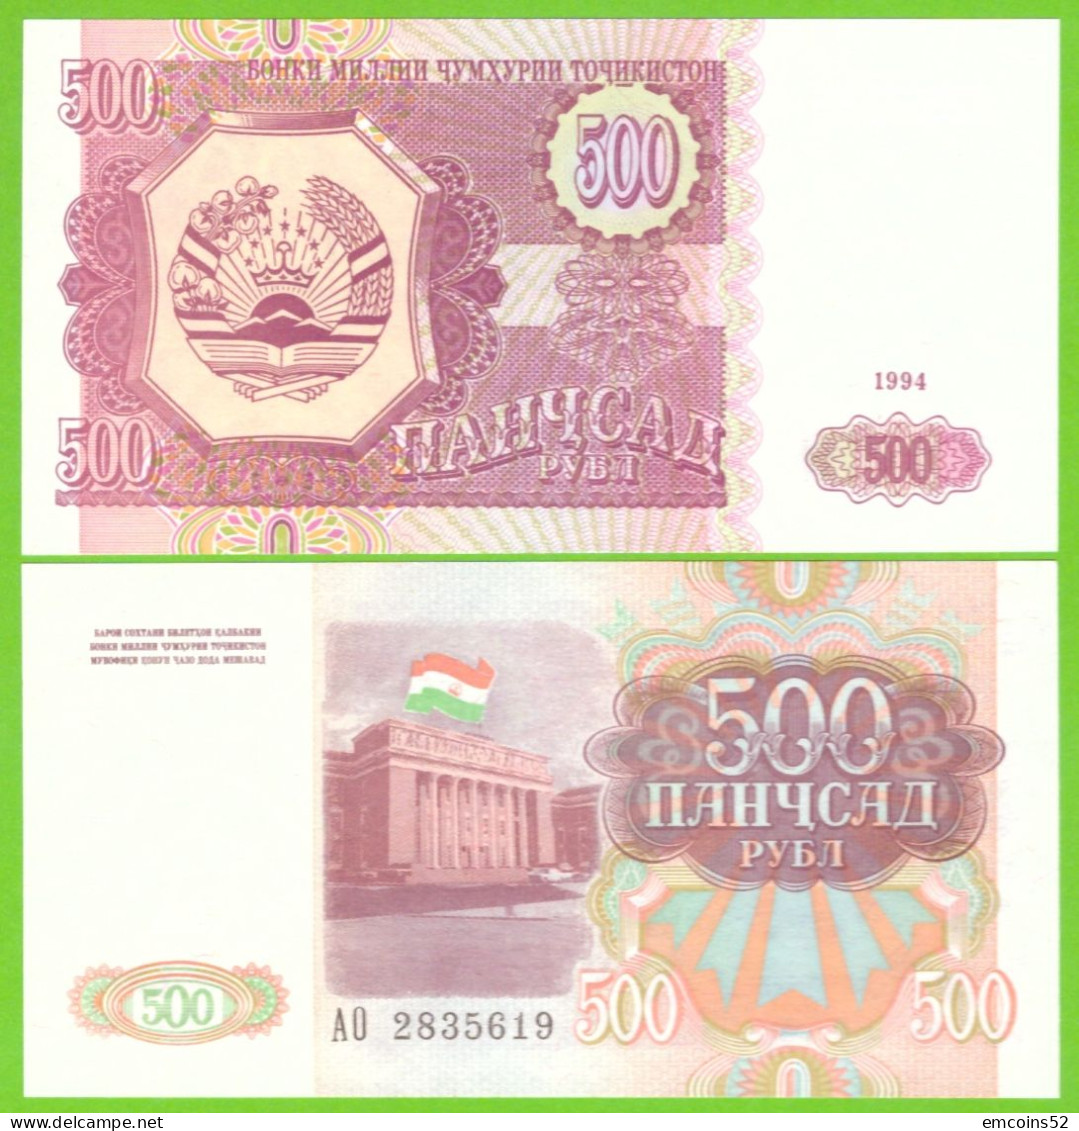 TAJIKISTAN 500 RUBL 1994 P-8 UNC - Tadschikistan